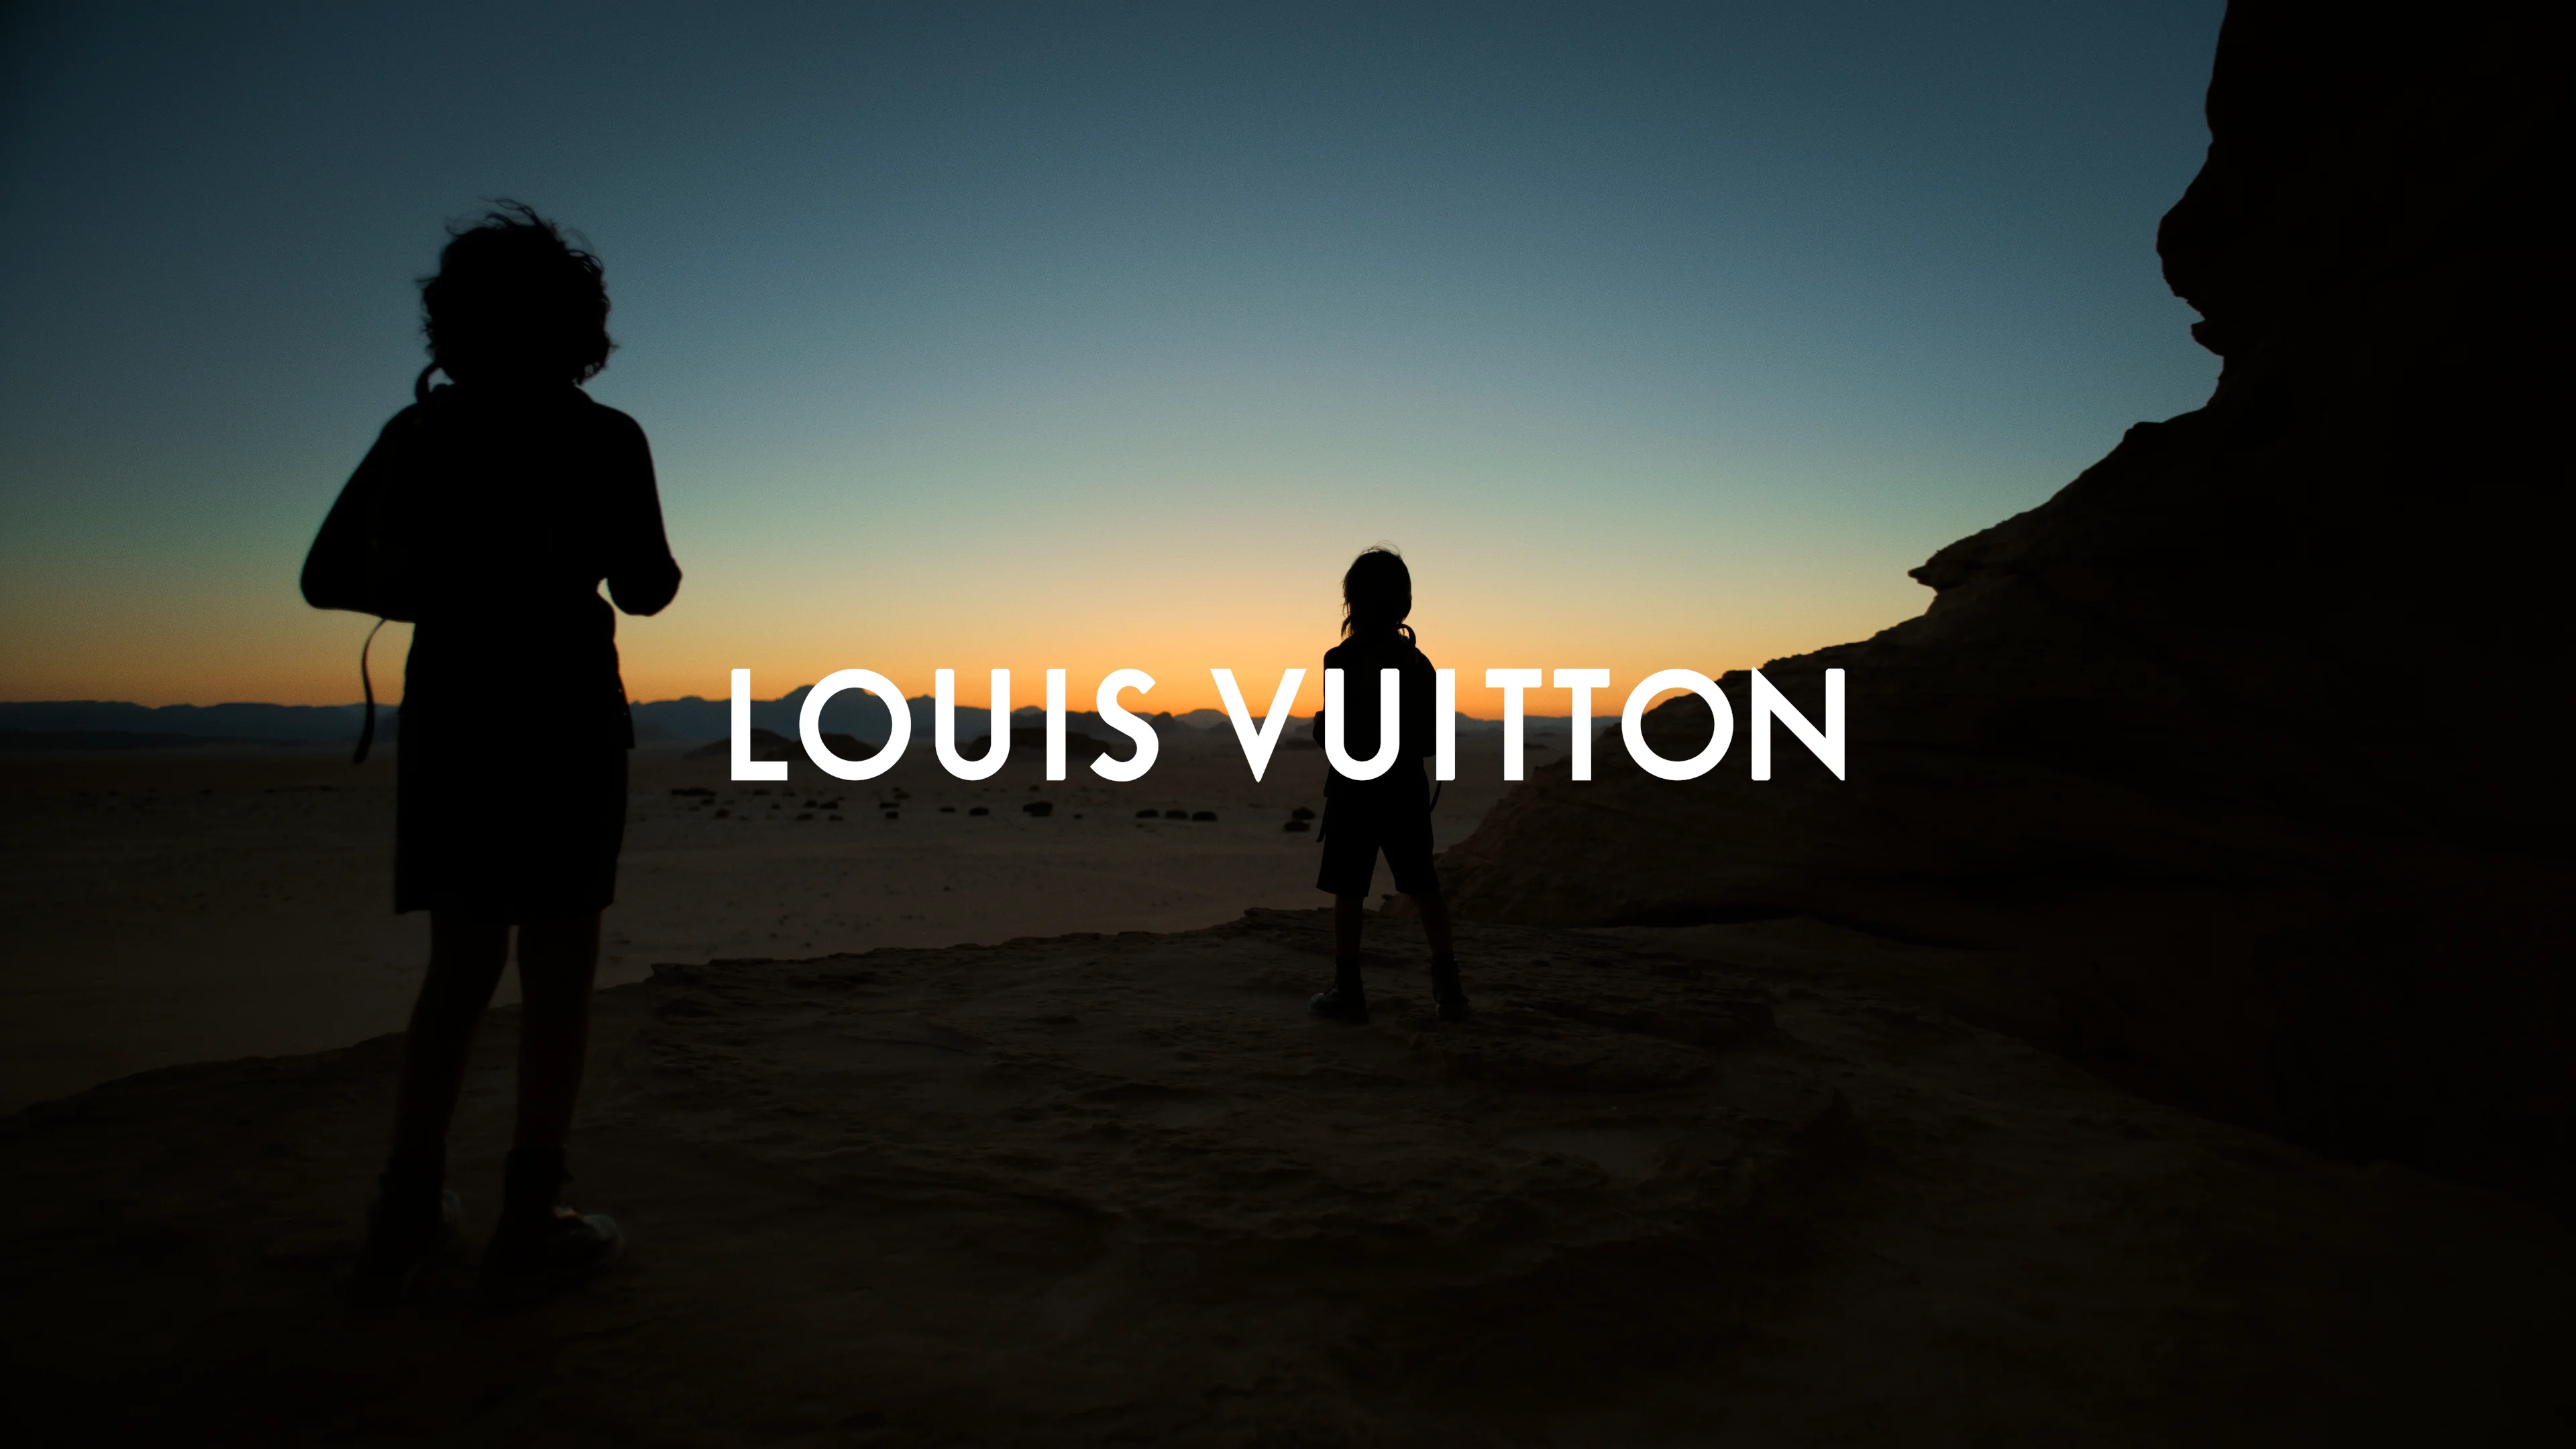 Towards a Dream  Louis vuitton travel, Brand campaign, Louis vuitton